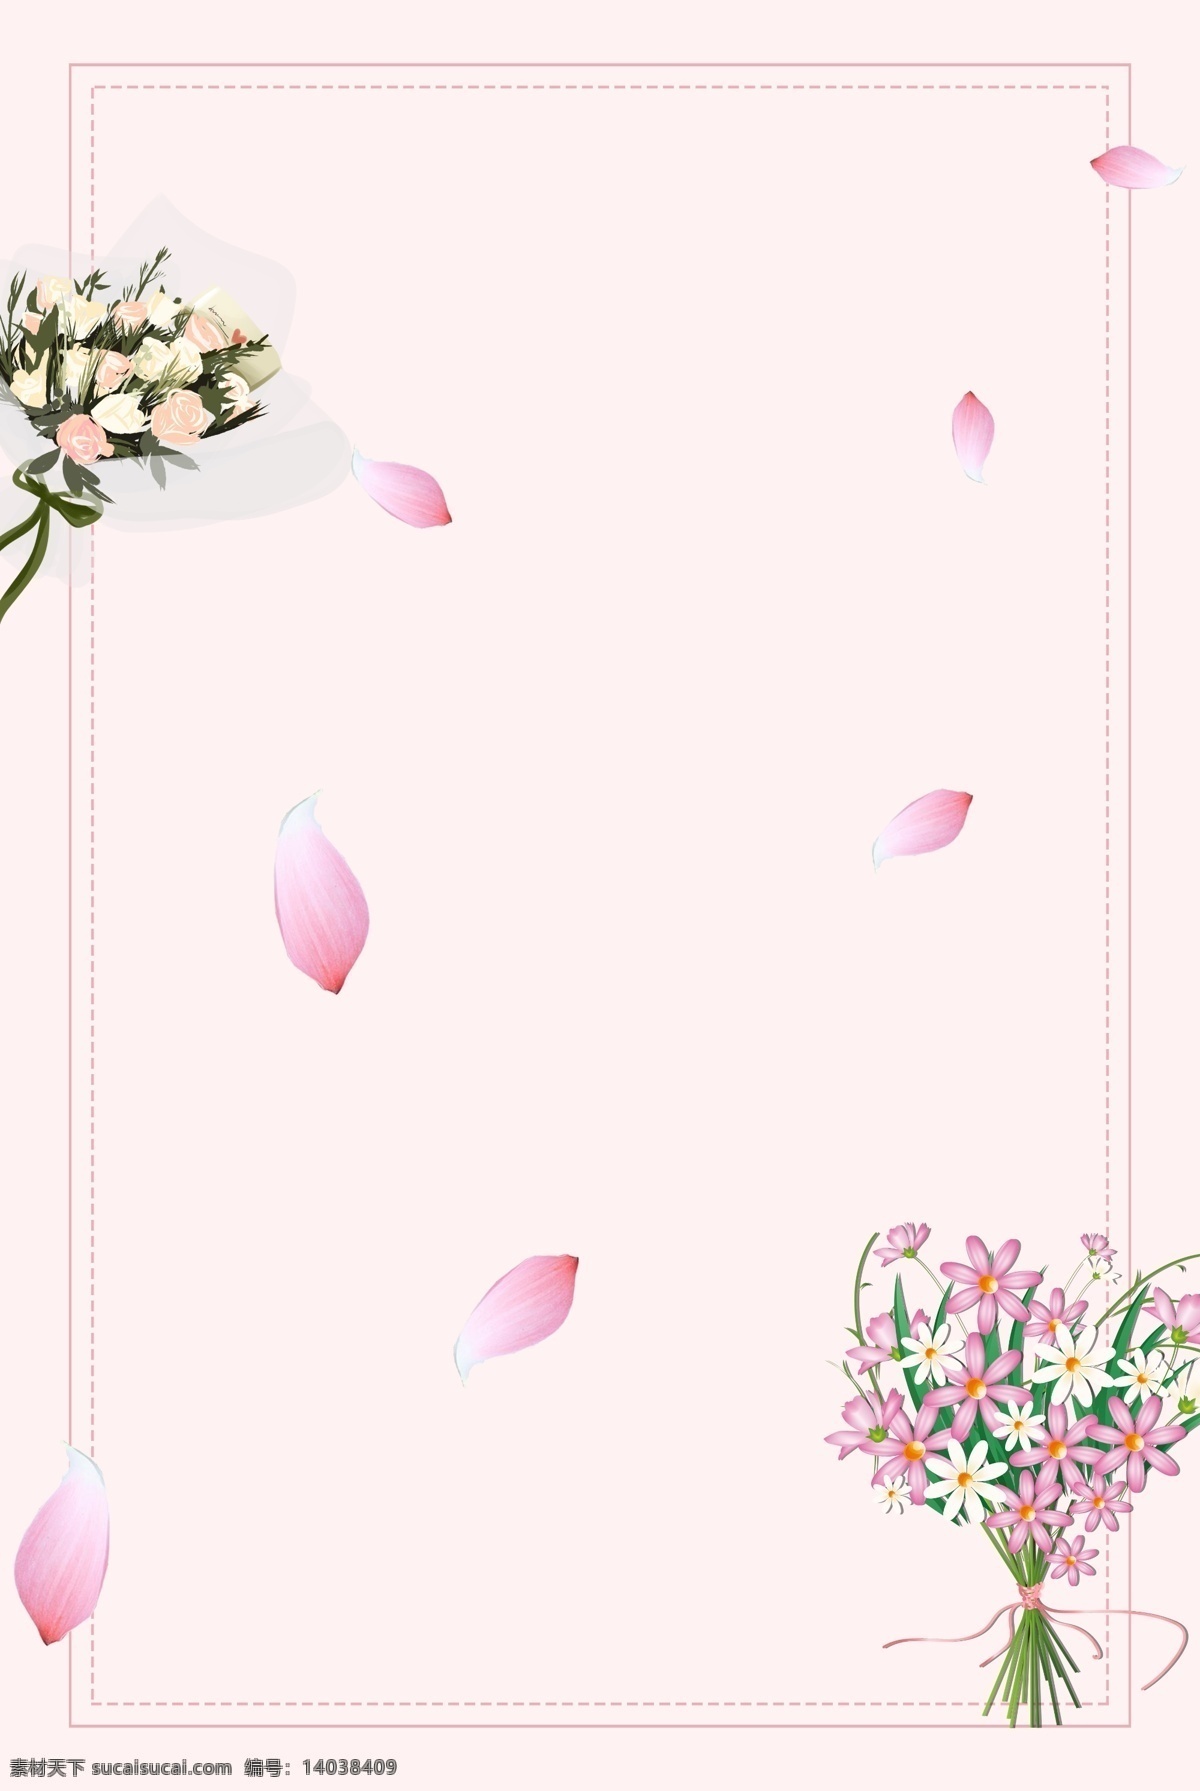 花瓣 构成 h5 图 背景 花 玫瑰 粉色